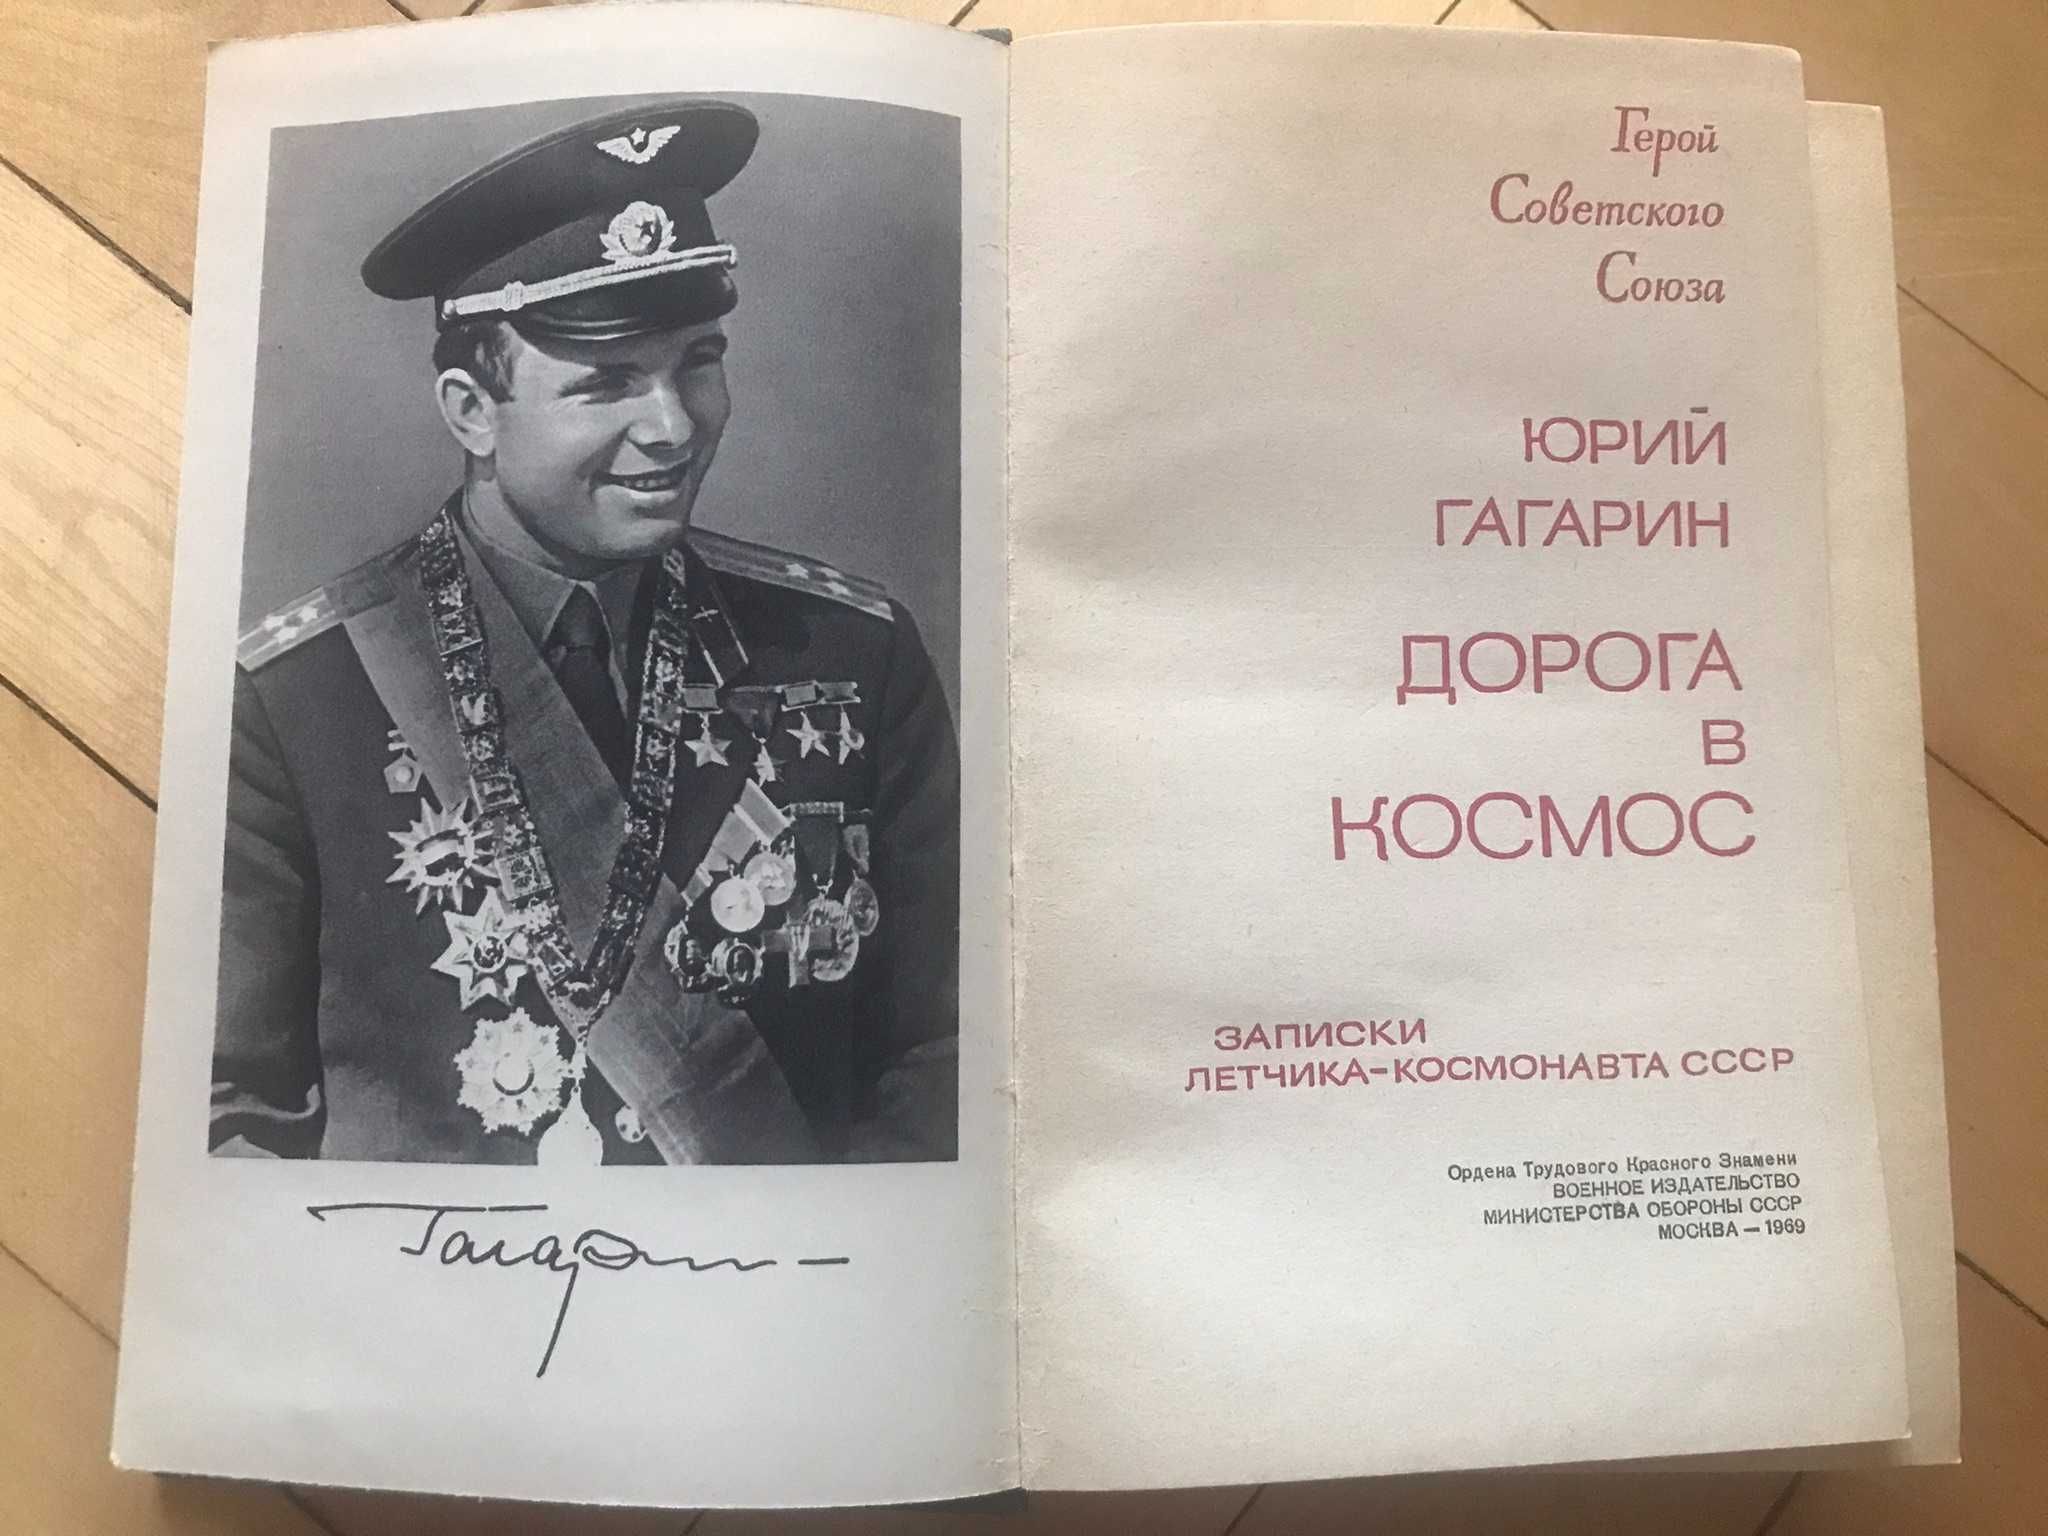 Гагарин, «Дорога в космос», 1969